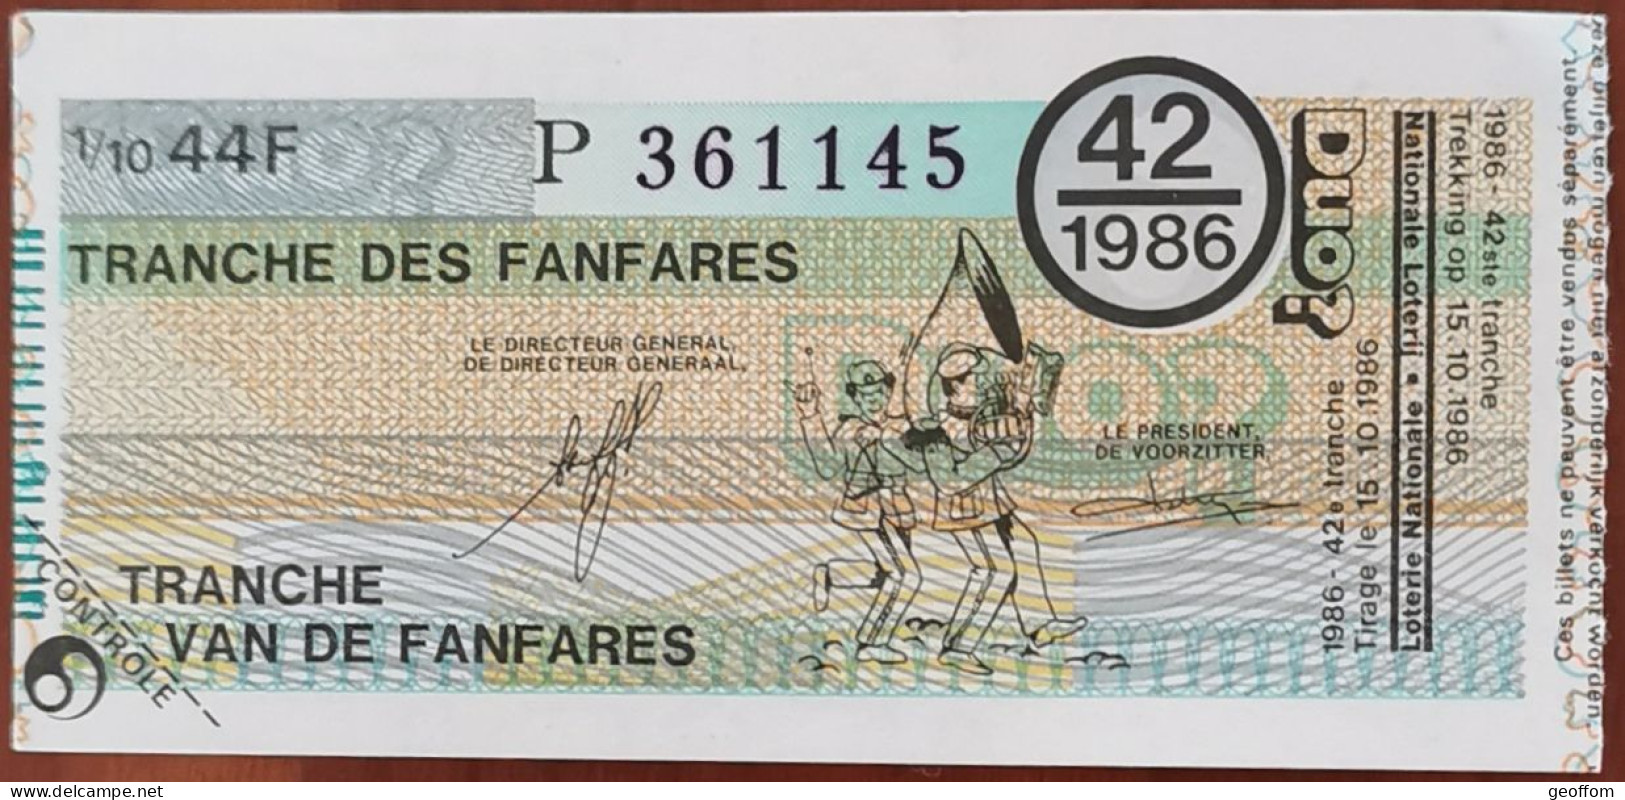 Billet De Loterie Nationale Belgique 1986 42e Tranche Des Fanfares - 15-10-1986 - Billetes De Lotería